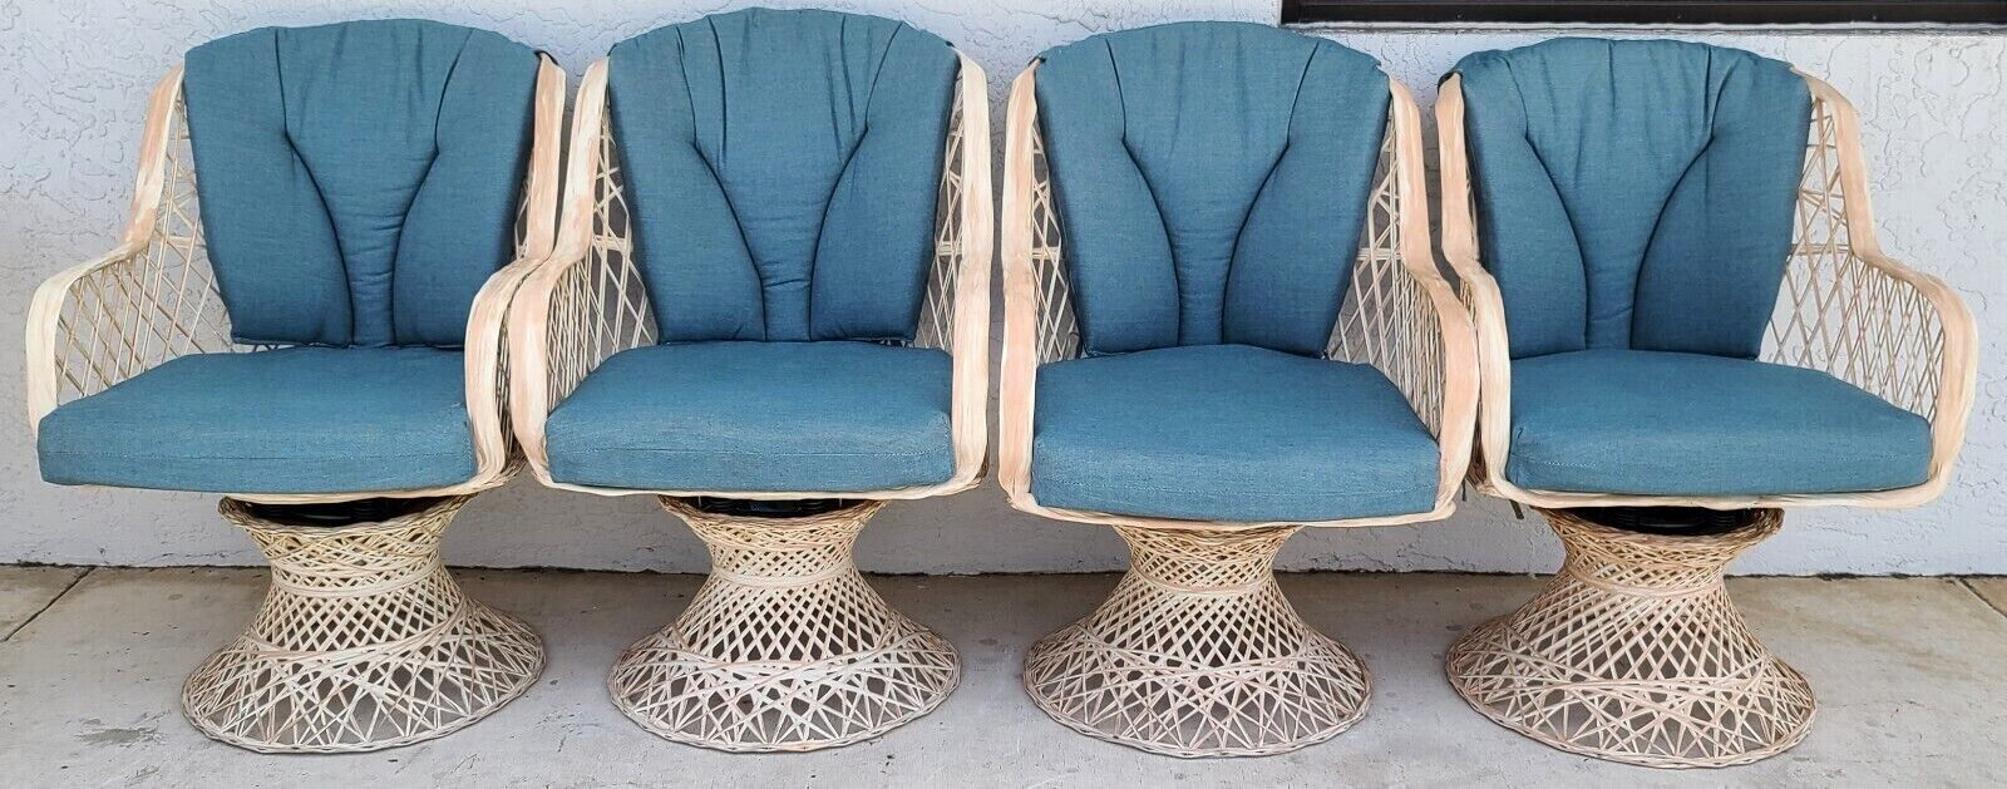 vintage spun fiberglass patio furniture